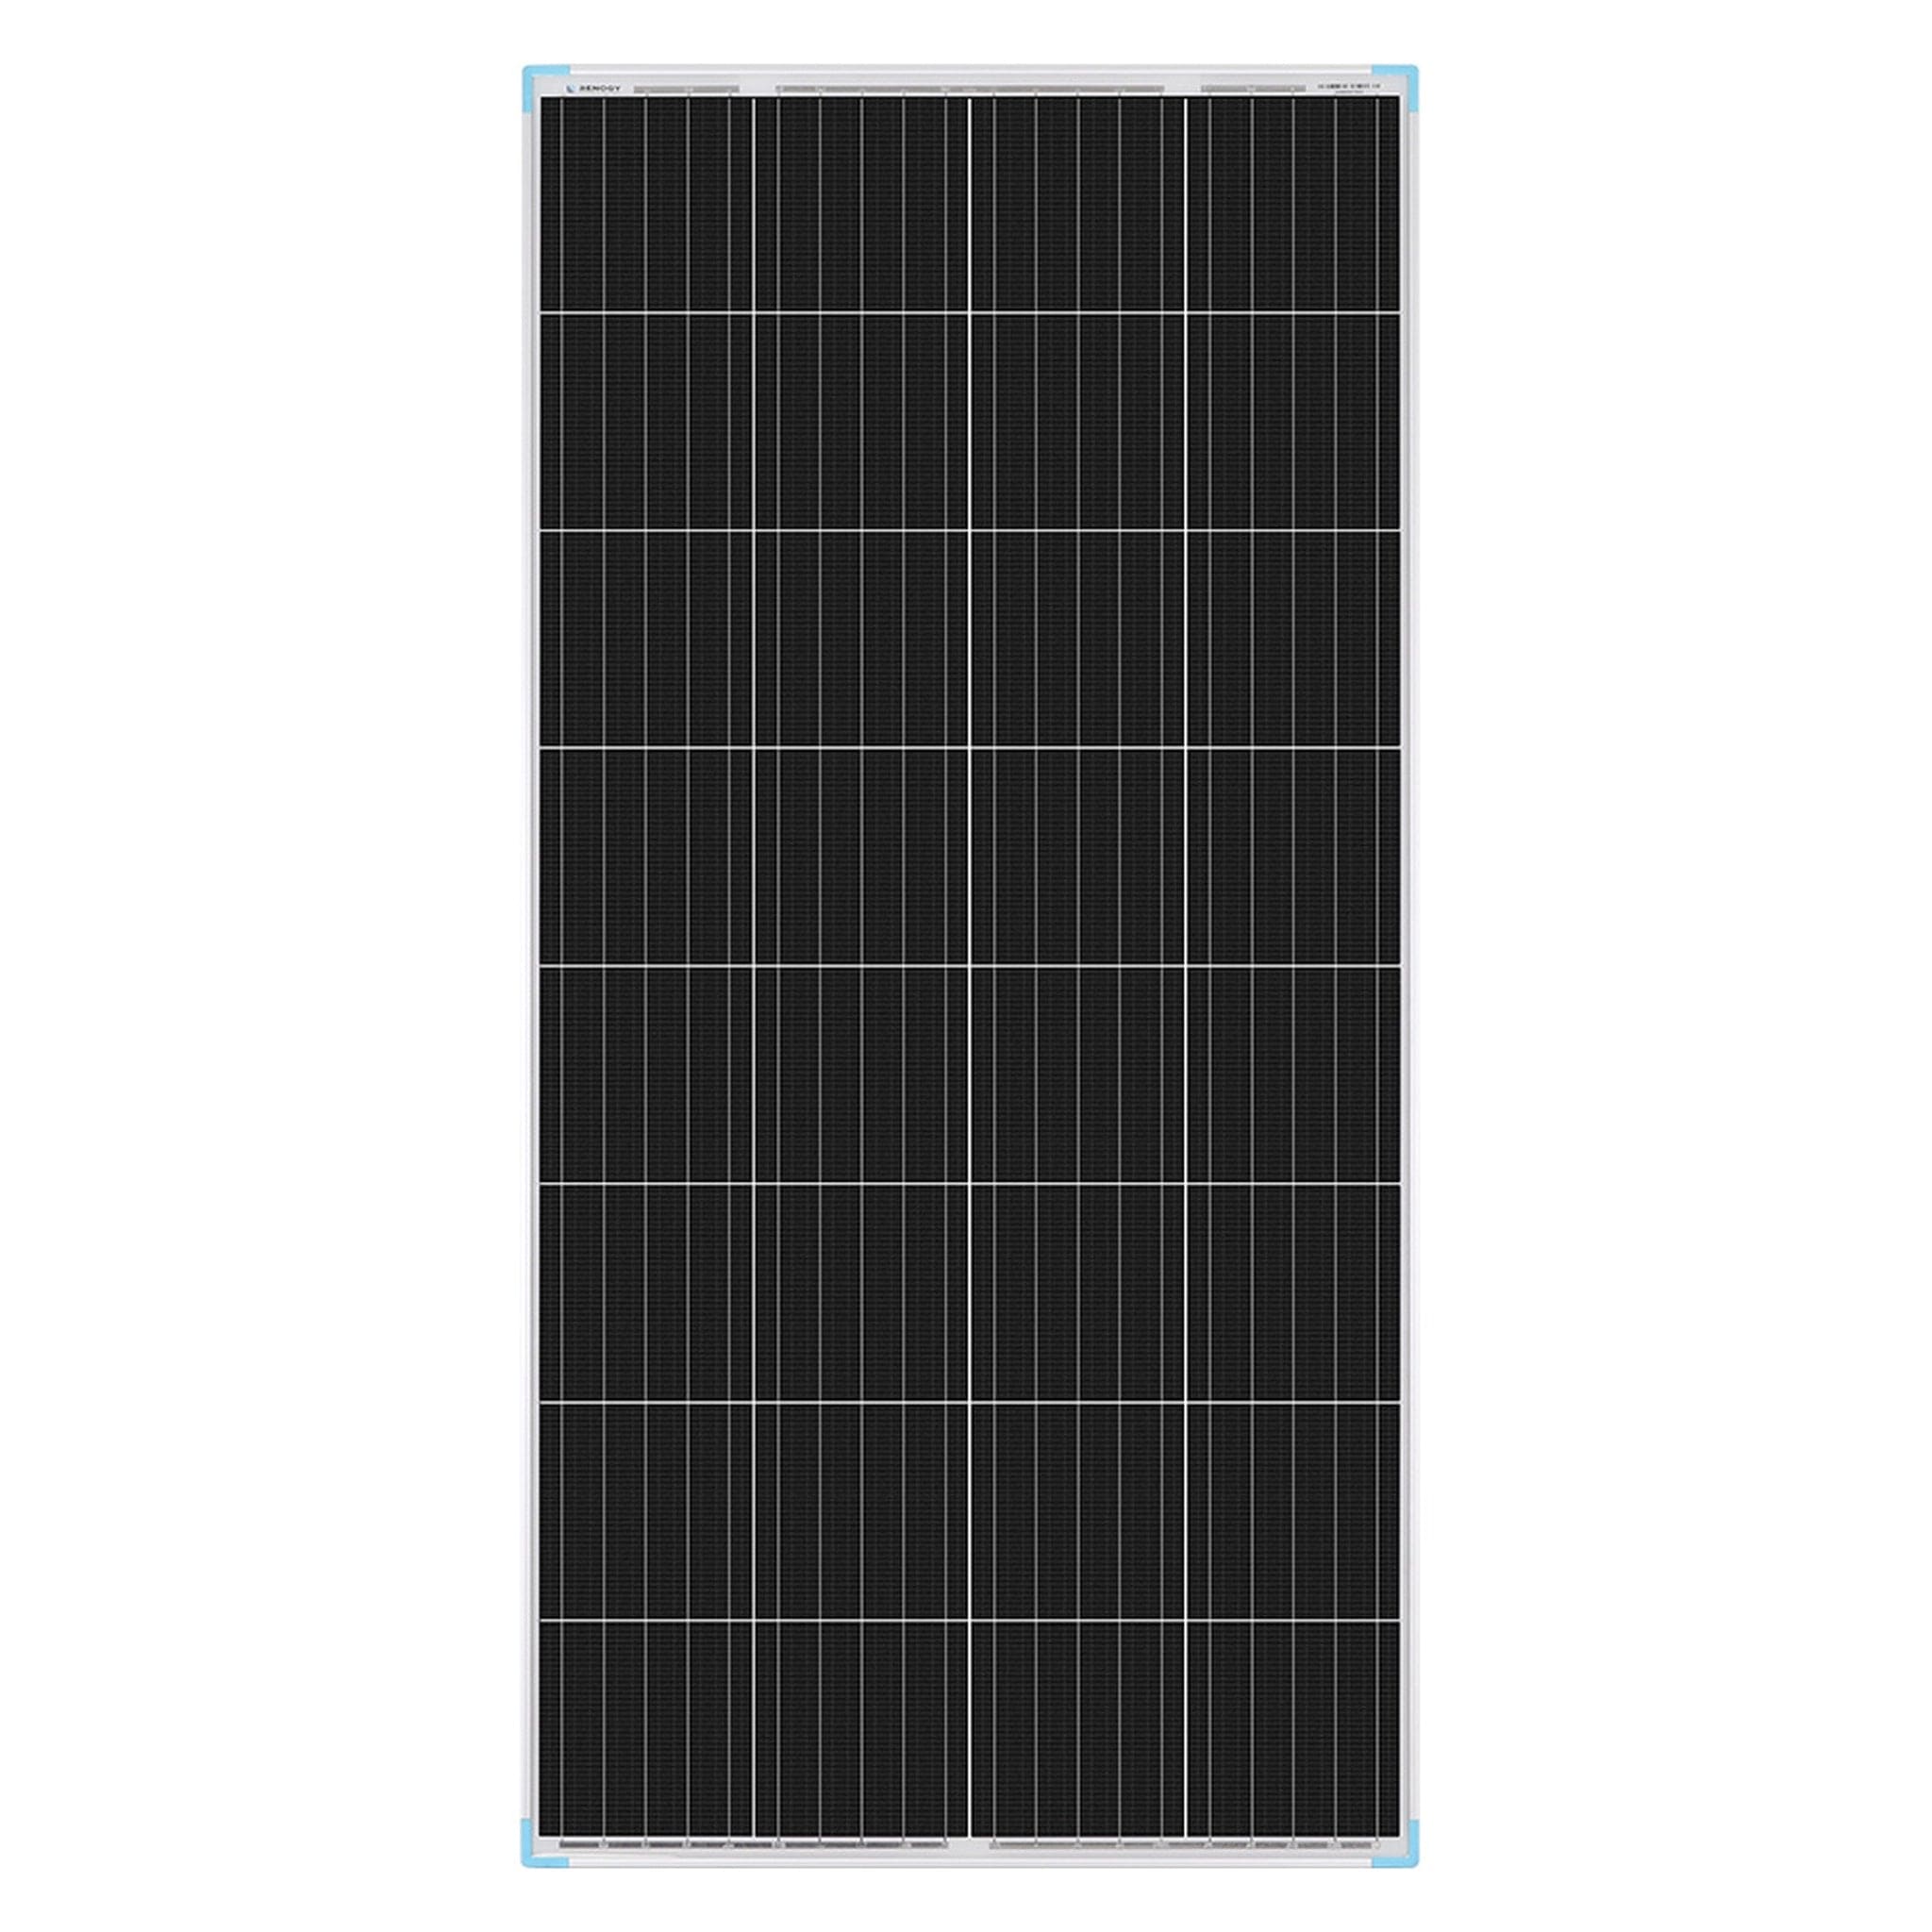 Renogy 175W 12V Monocrystalline Solar Panel